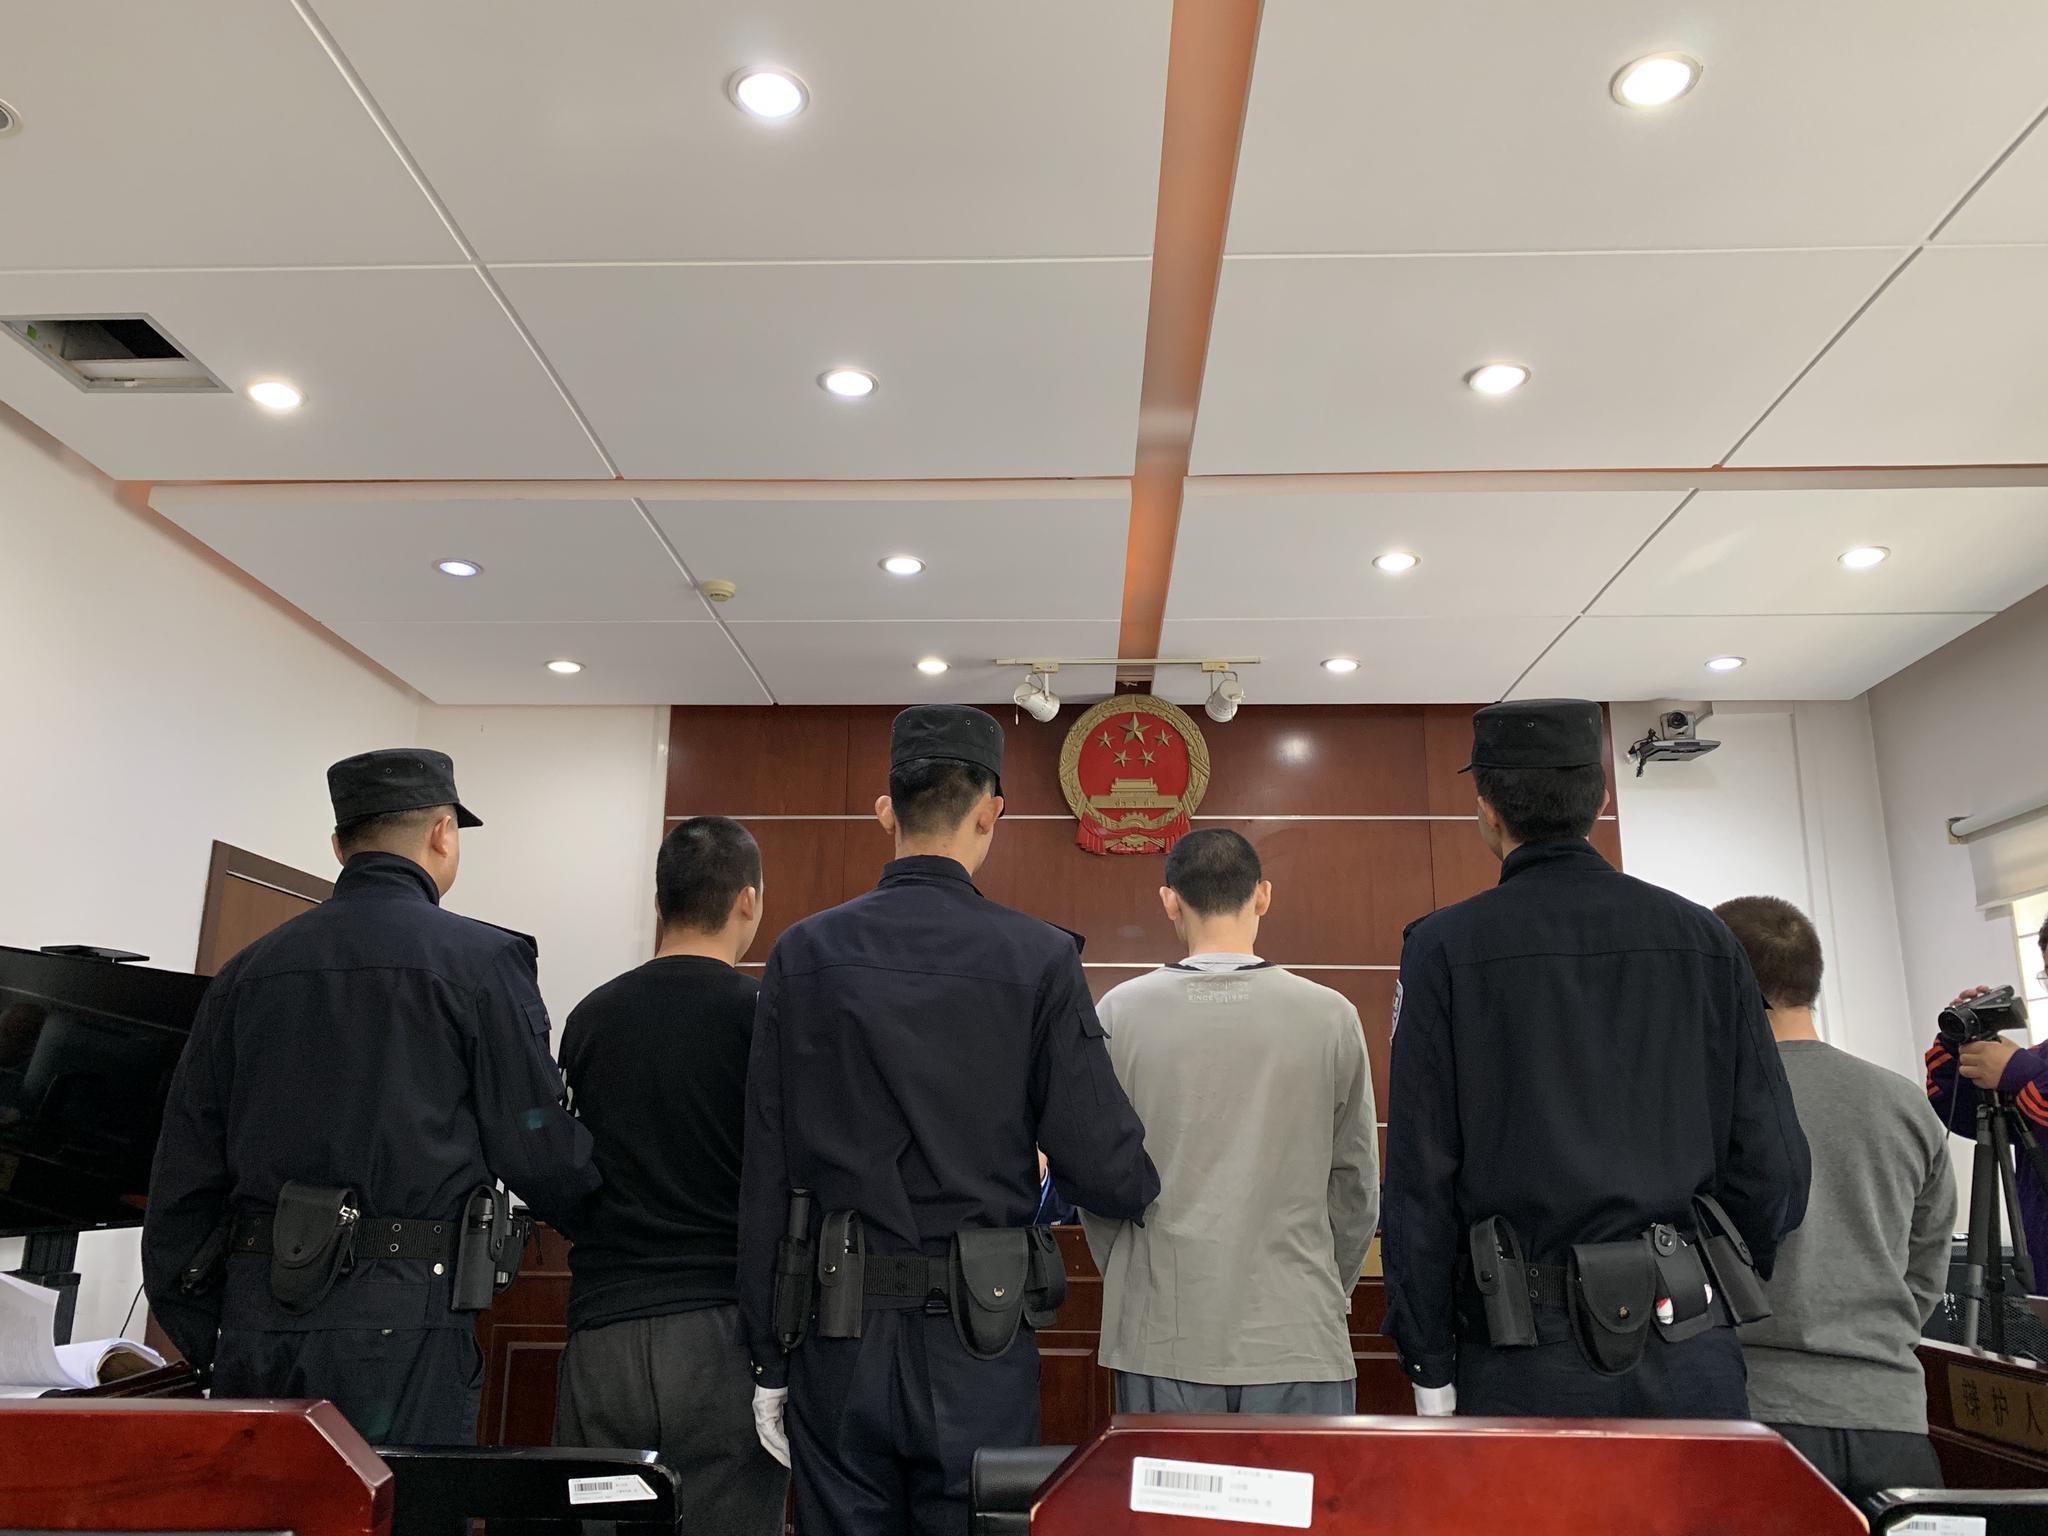 三名被告人在法庭上，戴眼镜是王某。新京报记者 刘洋 摄